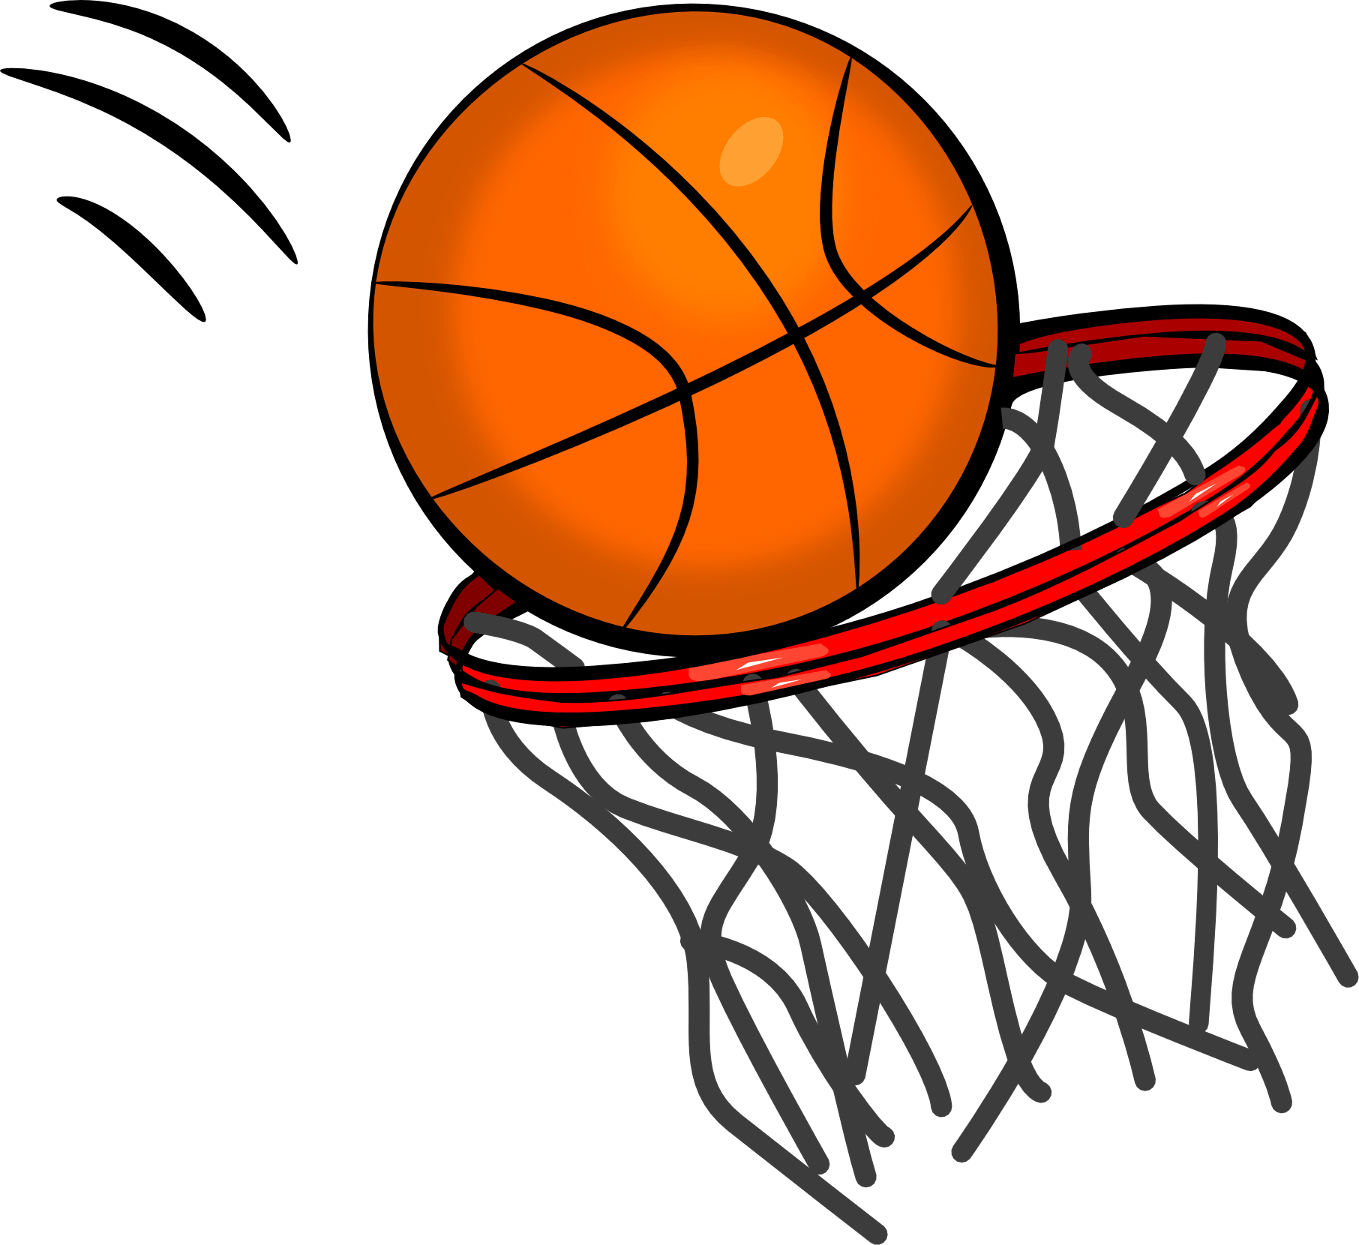 Pada arah kesegala salah dinamakan dengan basket, pada satu bola berputar bertumpu kaki Artikel Olahraga